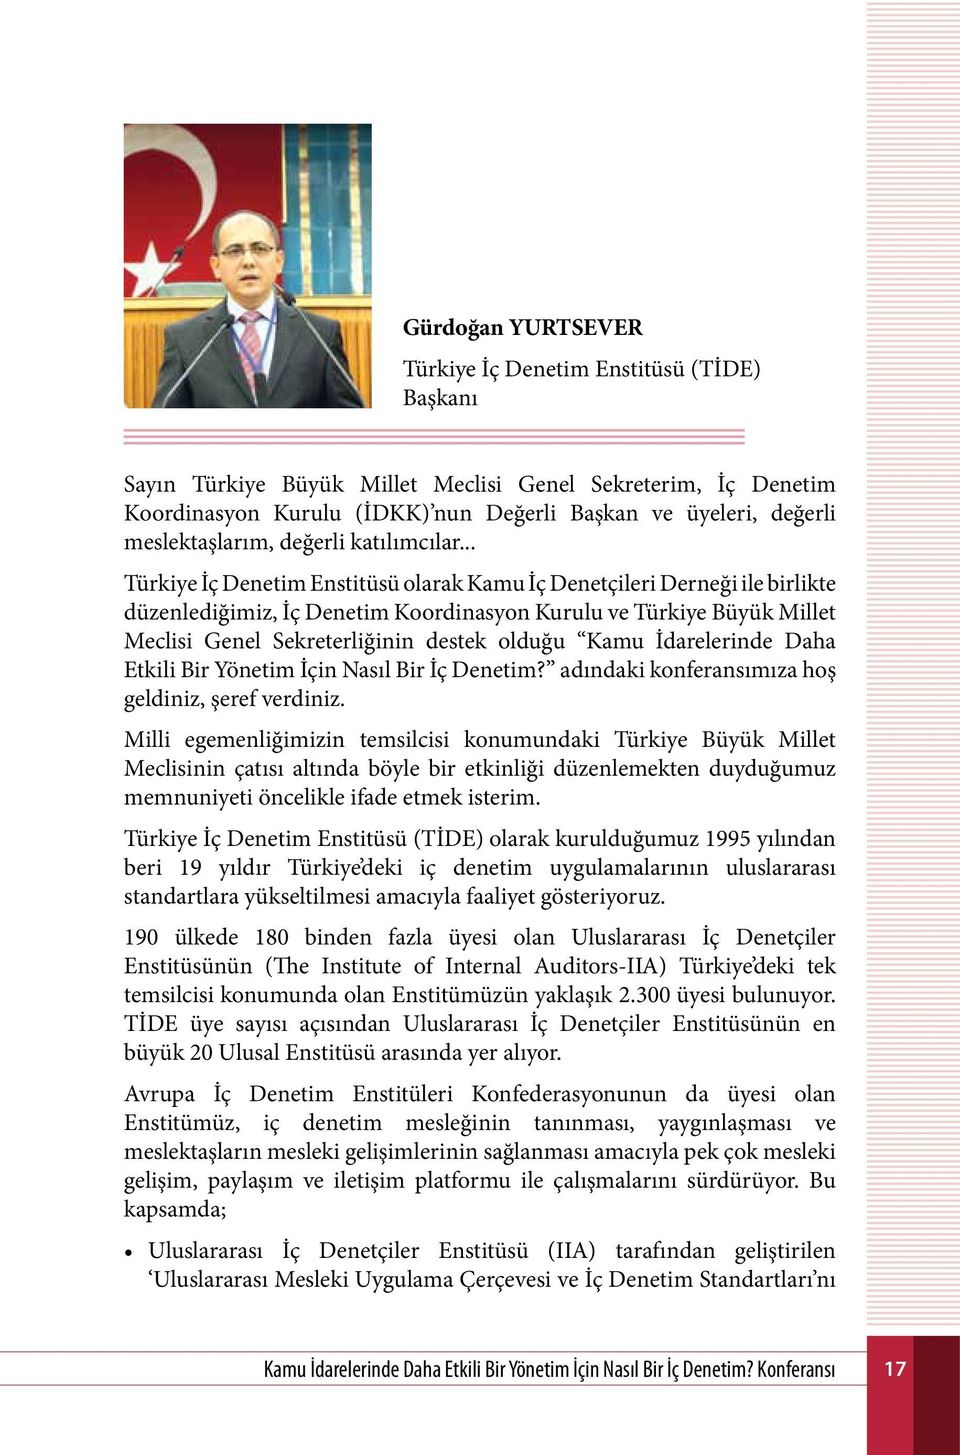 .. Türkiye İç Denetim Enstitüsü olarak Kamu İç Denetçileri Derneği ile birlikte düzenlediğimiz, İç Denetim Koordinasyon Kurulu ve Türkiye Büyük Millet Meclisi Genel Sekreterliğinin destek olduğu Kamu